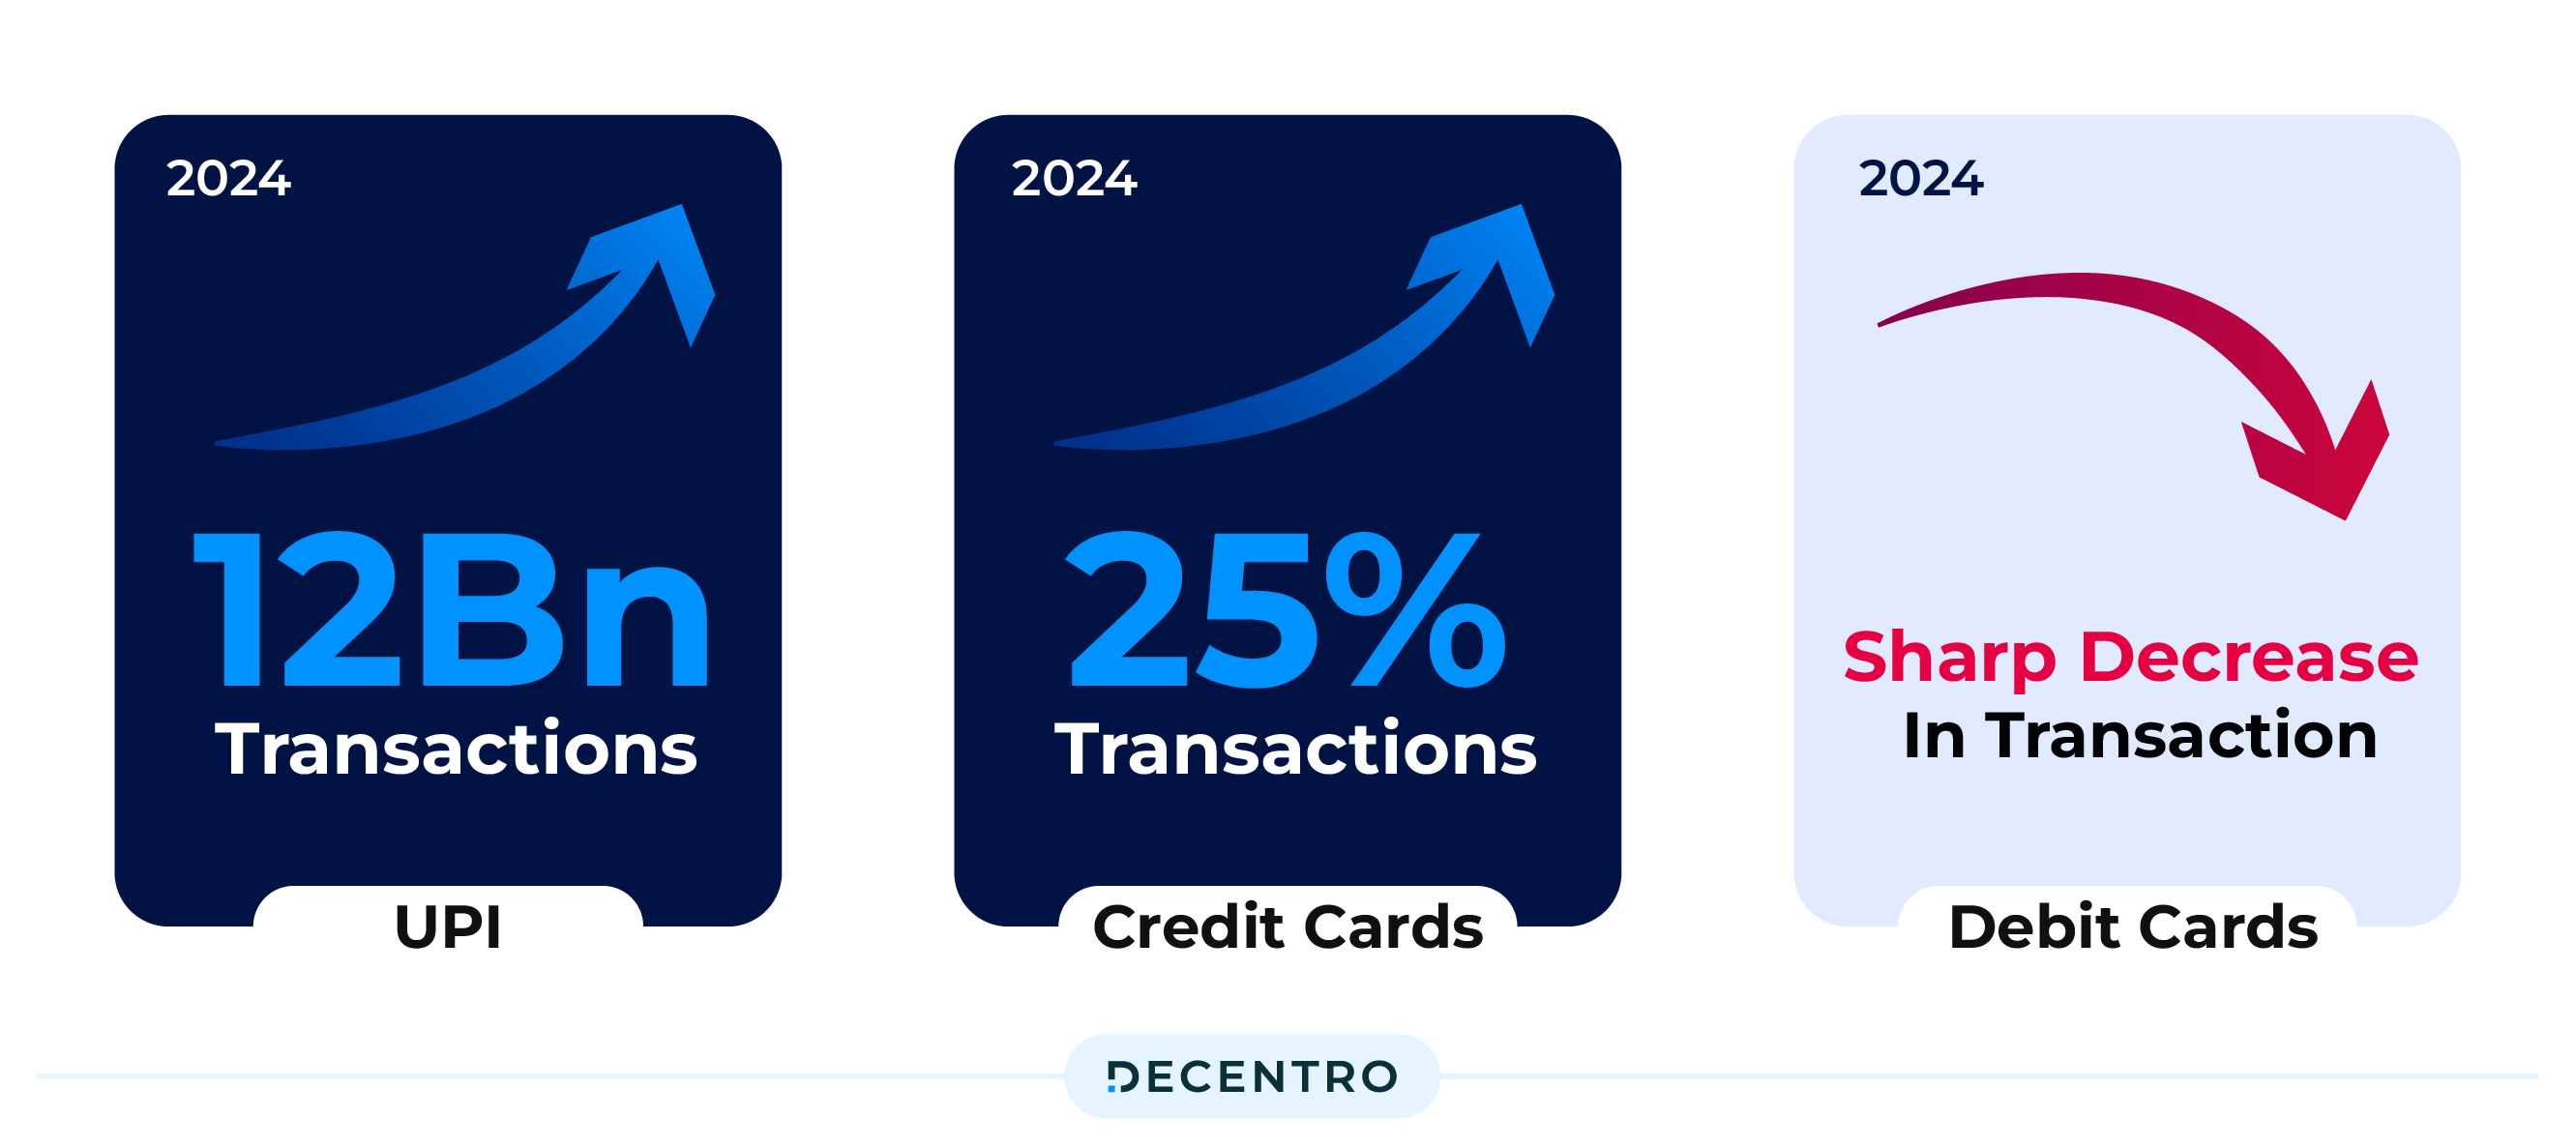 UPI Transaction stats along with credit debit landscape